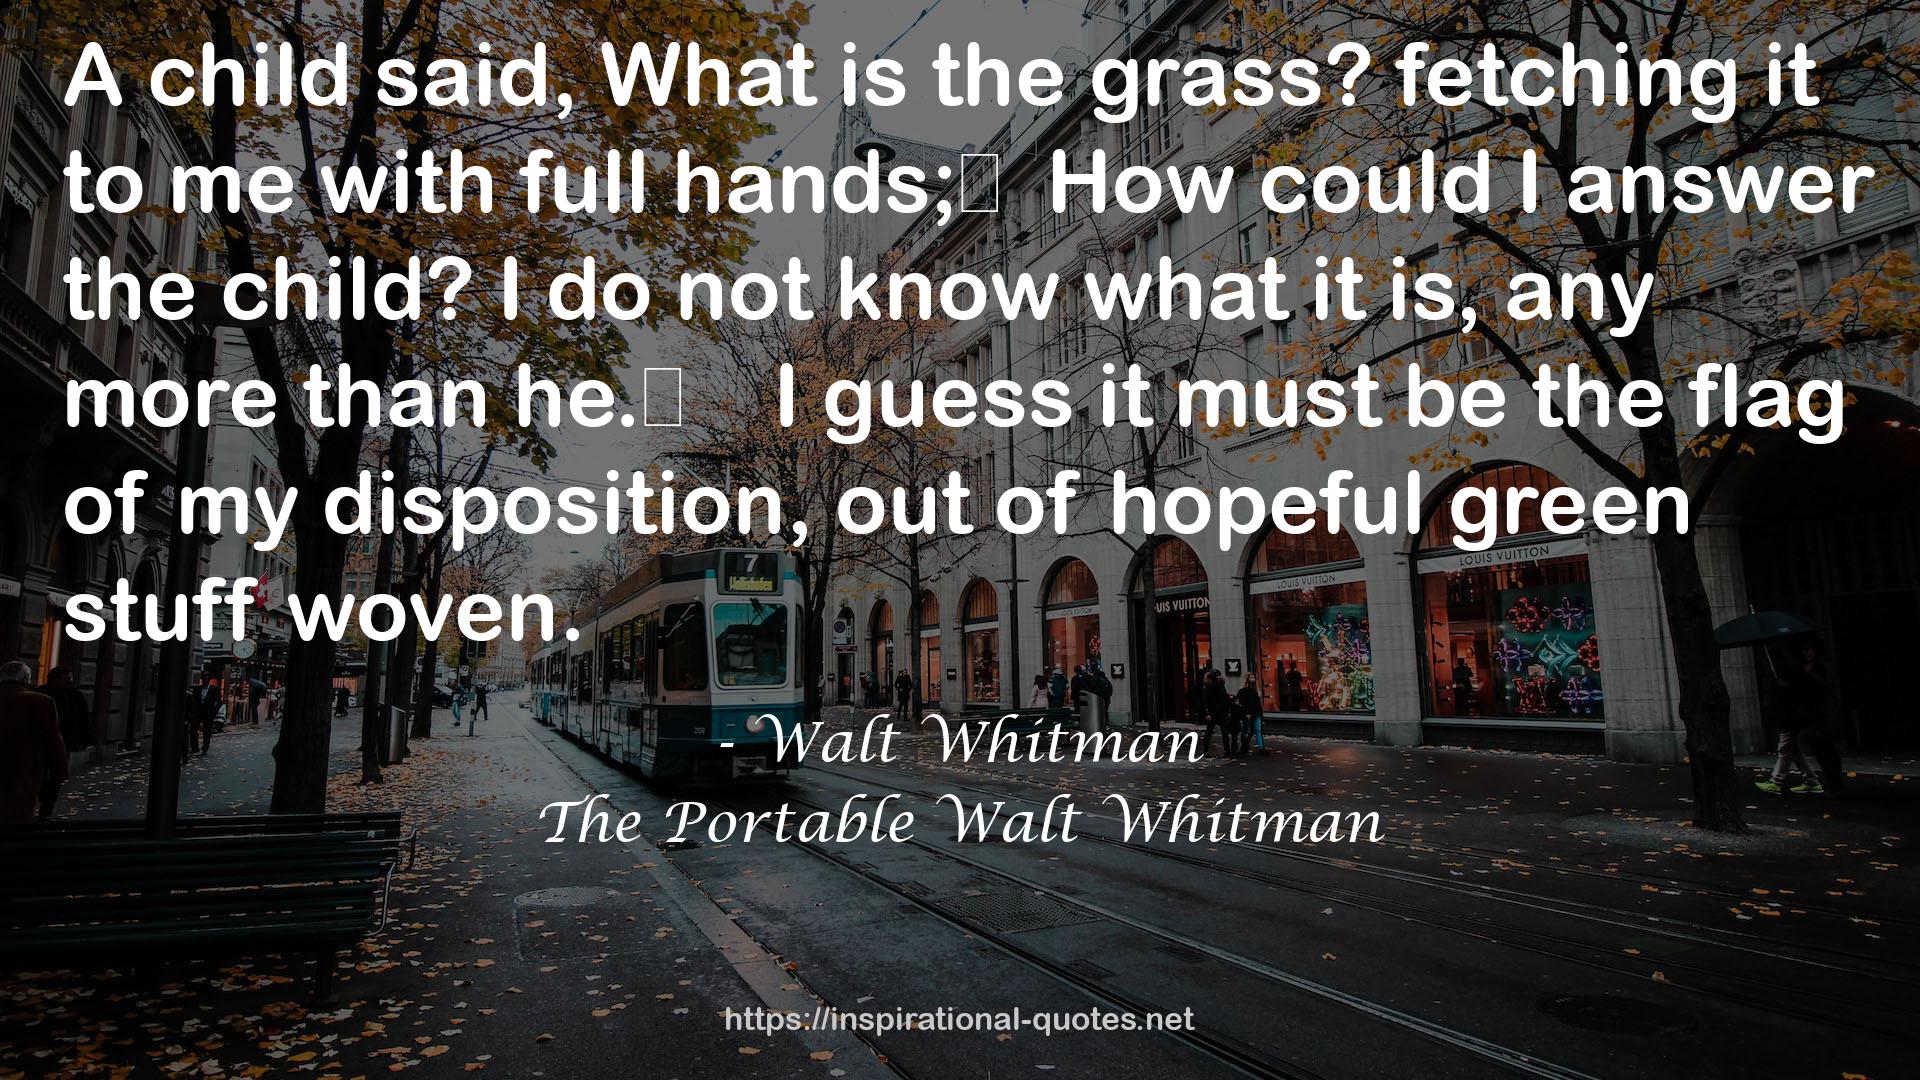 The Portable Walt Whitman QUOTES